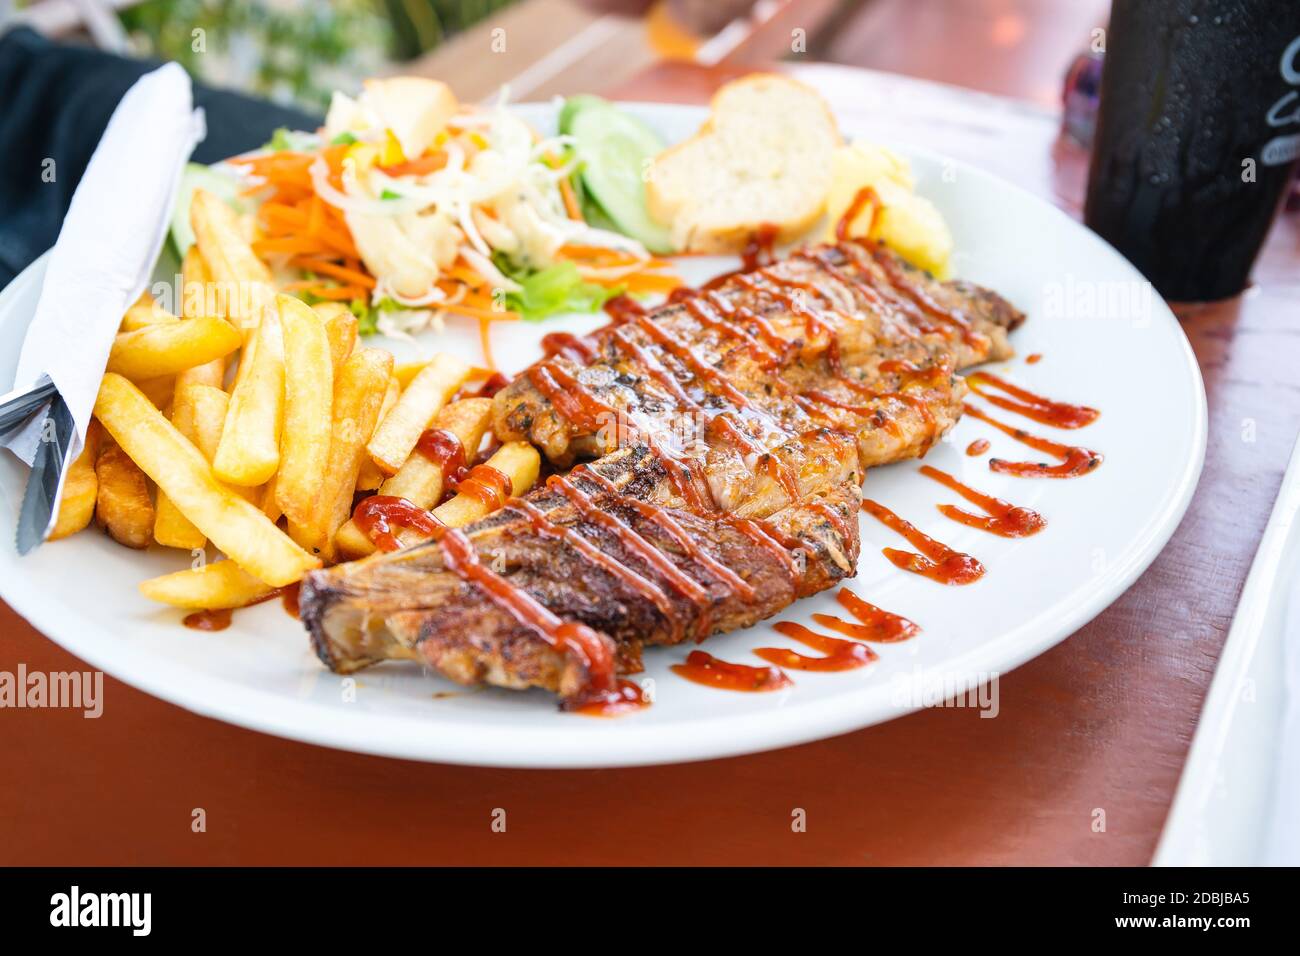 Gros plan du steak de bœuf grillé avec une salade sur une assiette, des  frites et des légumes à salade Photo Stock - Alamy